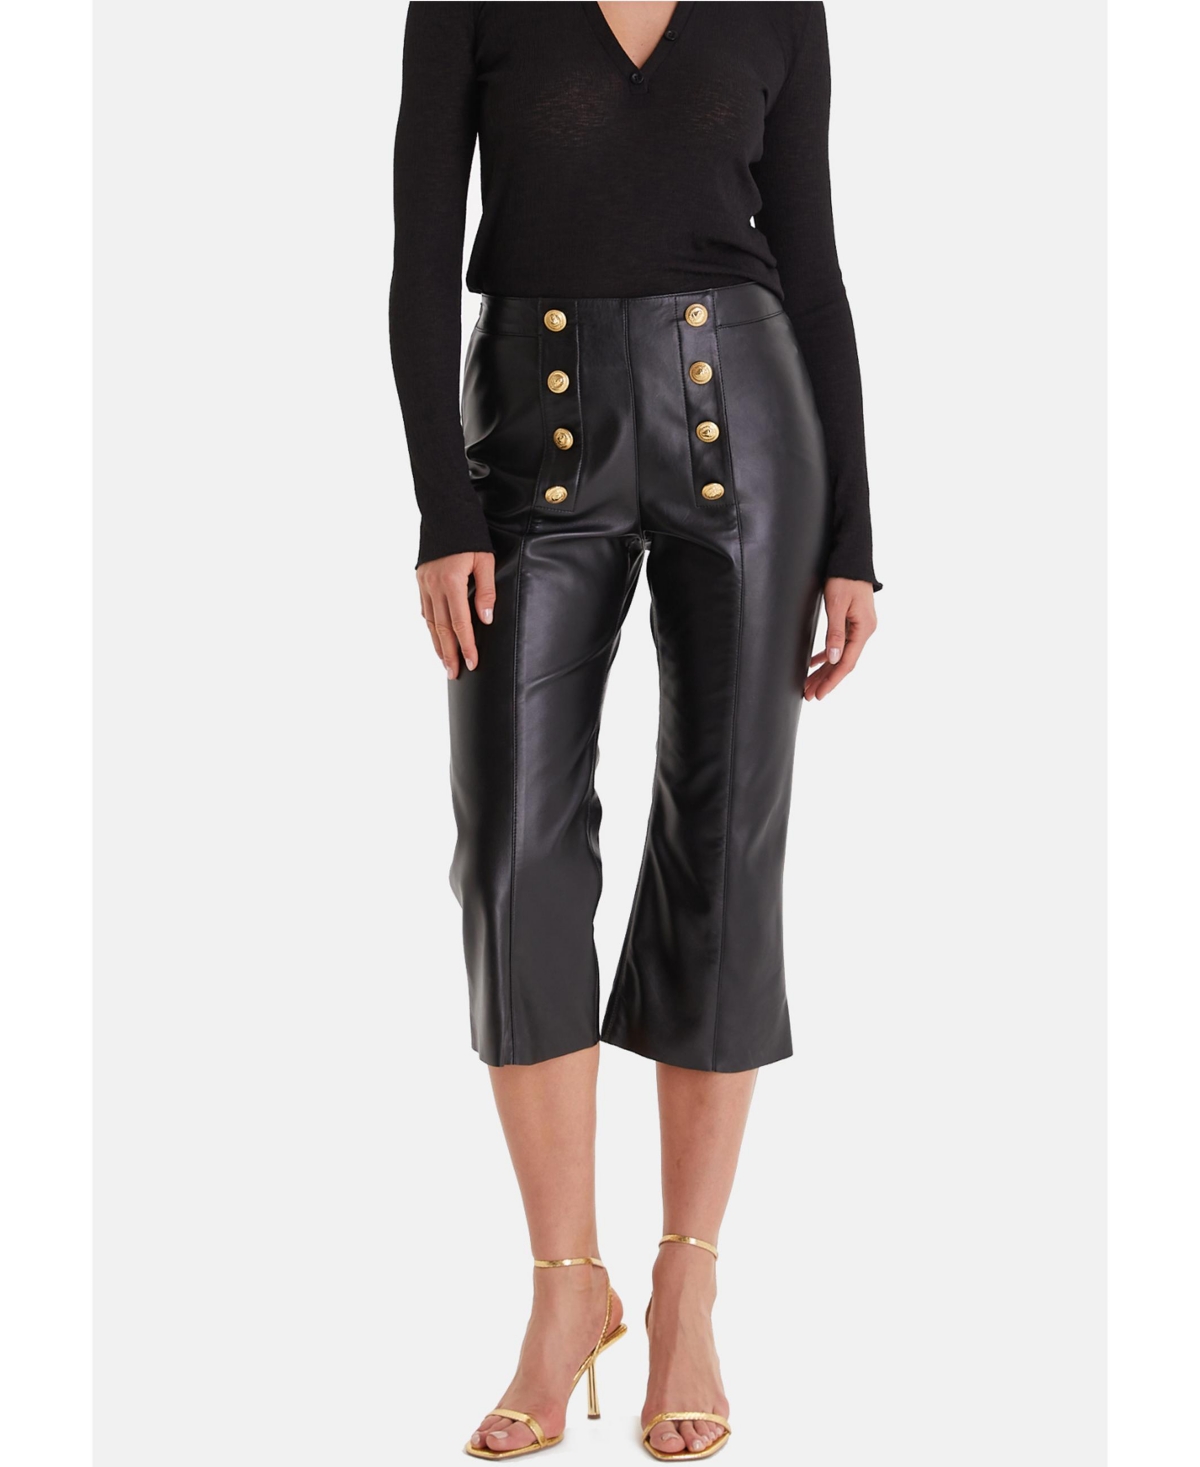 Women's Leather Fashion Pants, Black - Black